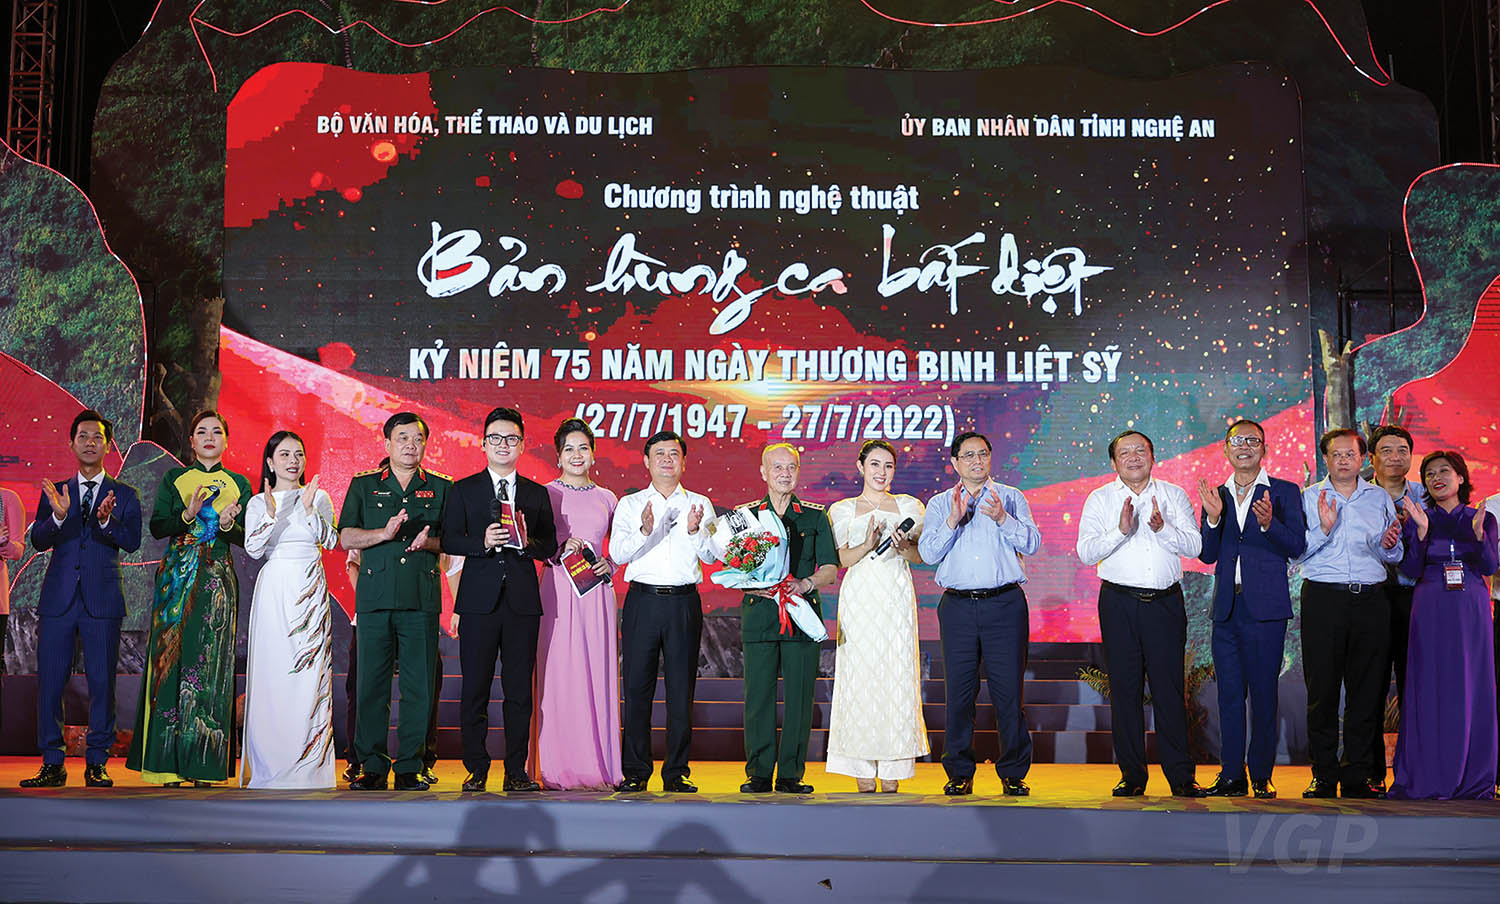 Thủ tướng Phạm Minh Chính tặng hoa và động viên các nghệ sĩ tham gia Chương trình nghệ thuật “Bản hùng ca bất diệt”